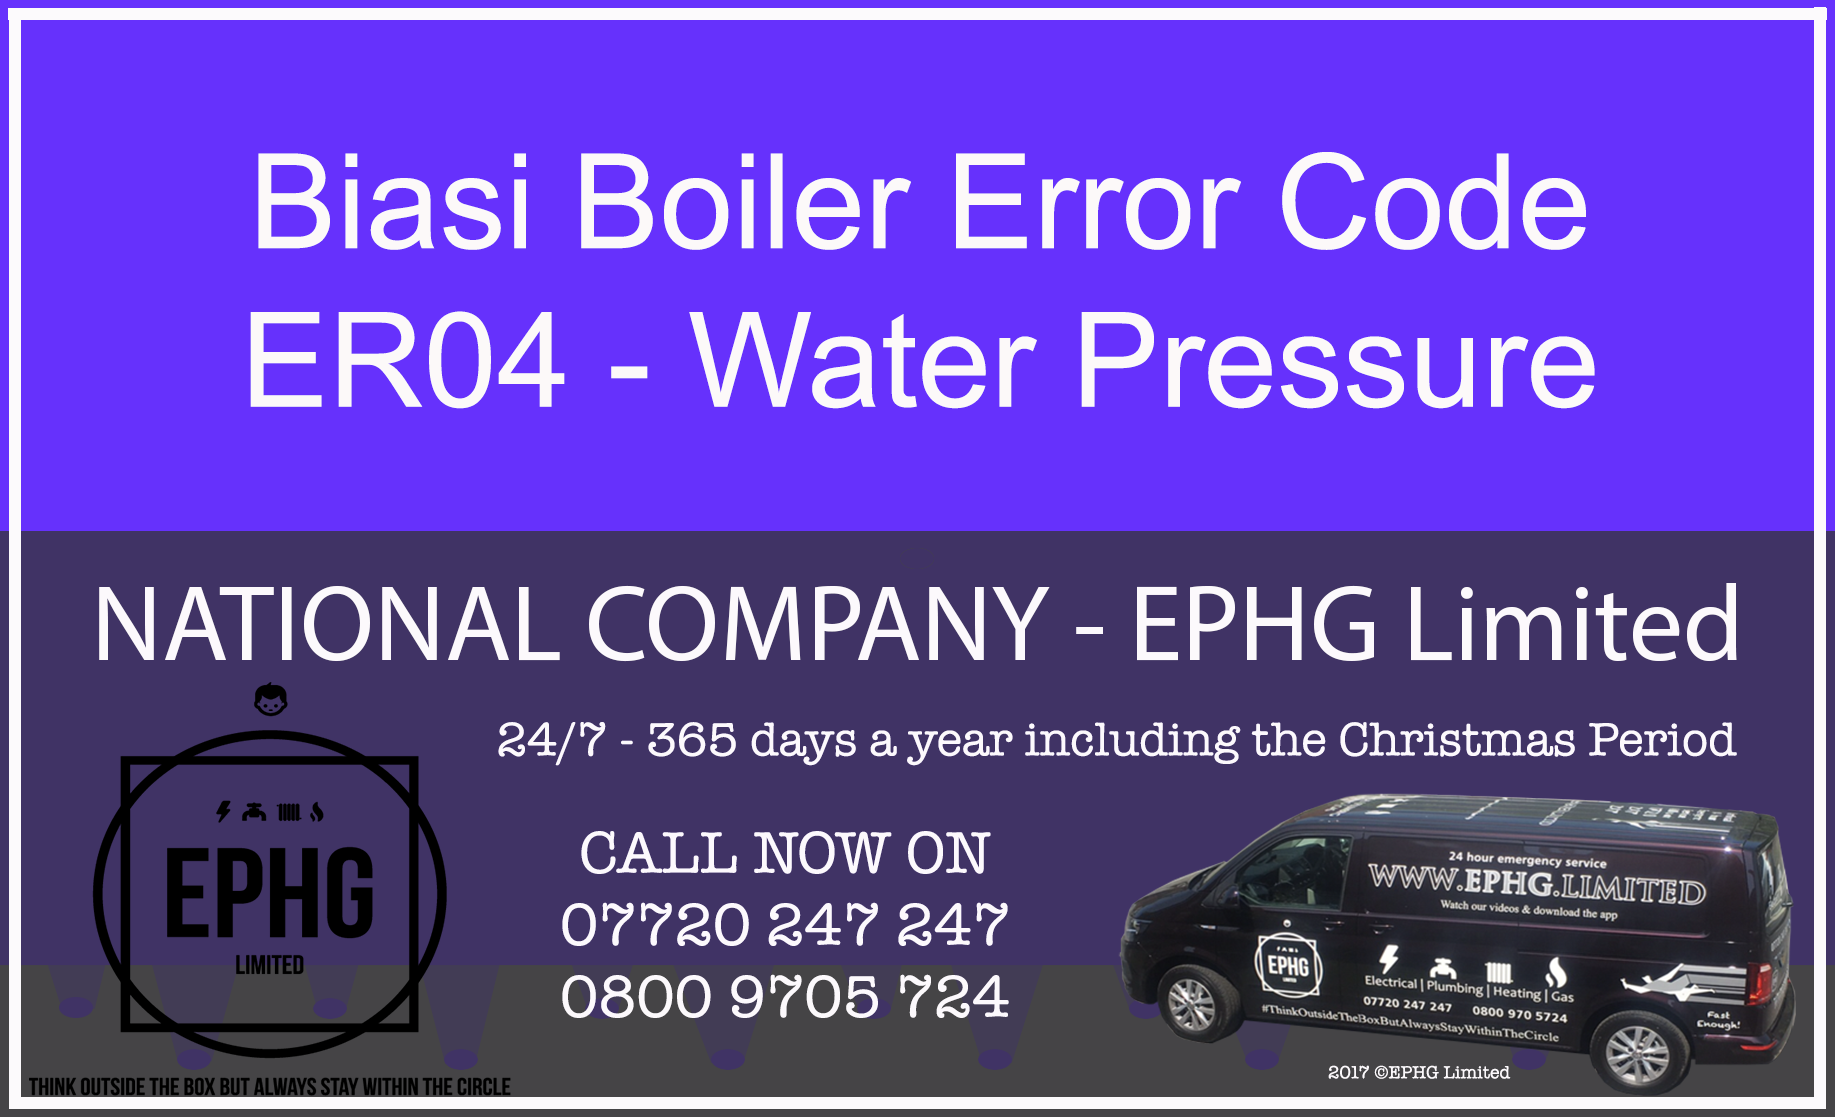 Biasi Boiler ER04 Fault Code Error